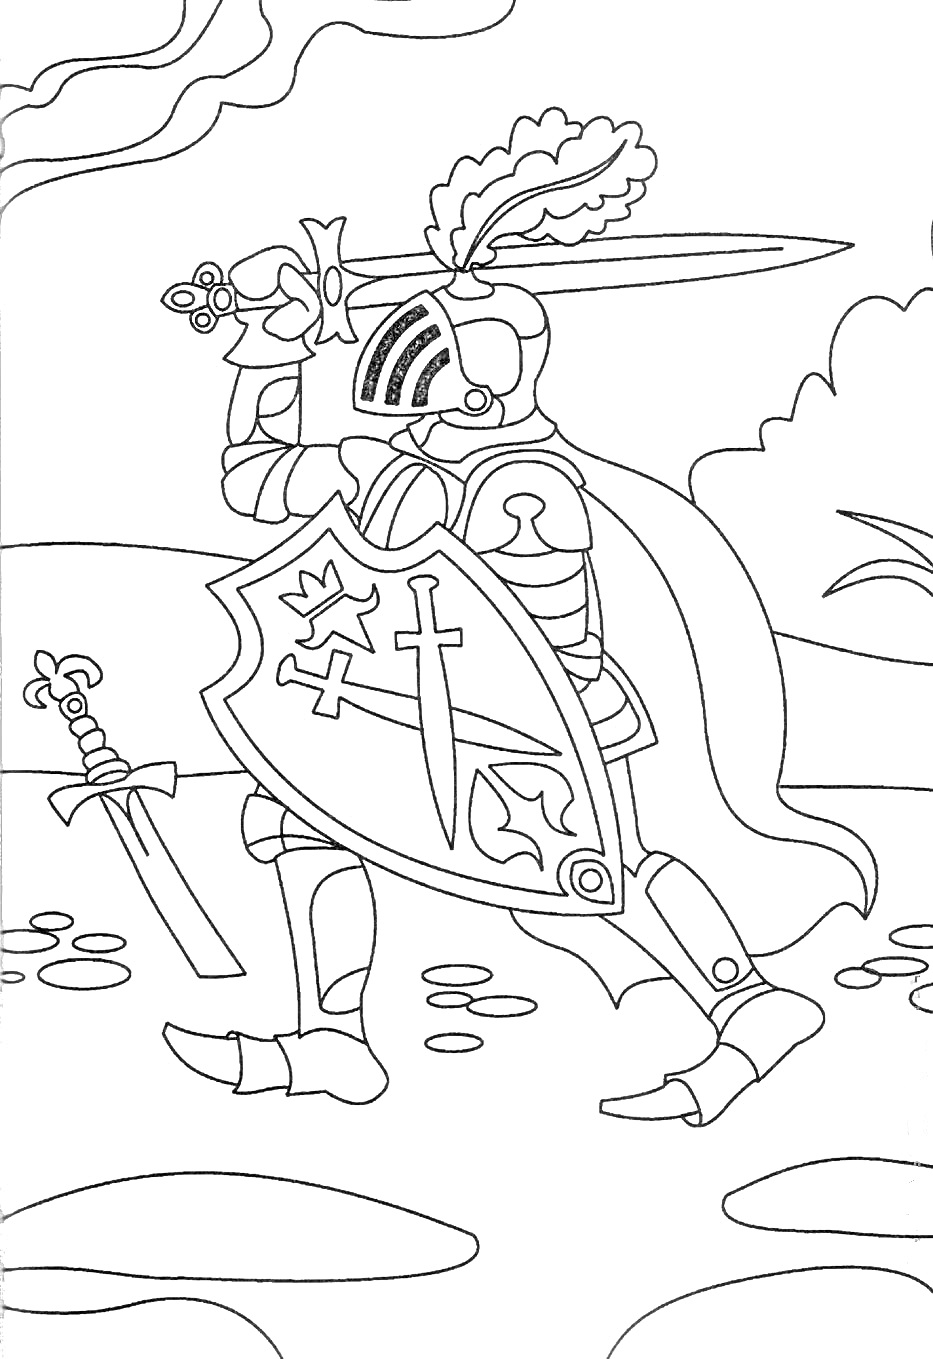 Раскраска Рыцарь с мечом, щитом и пером на шлеме, на фоне природы